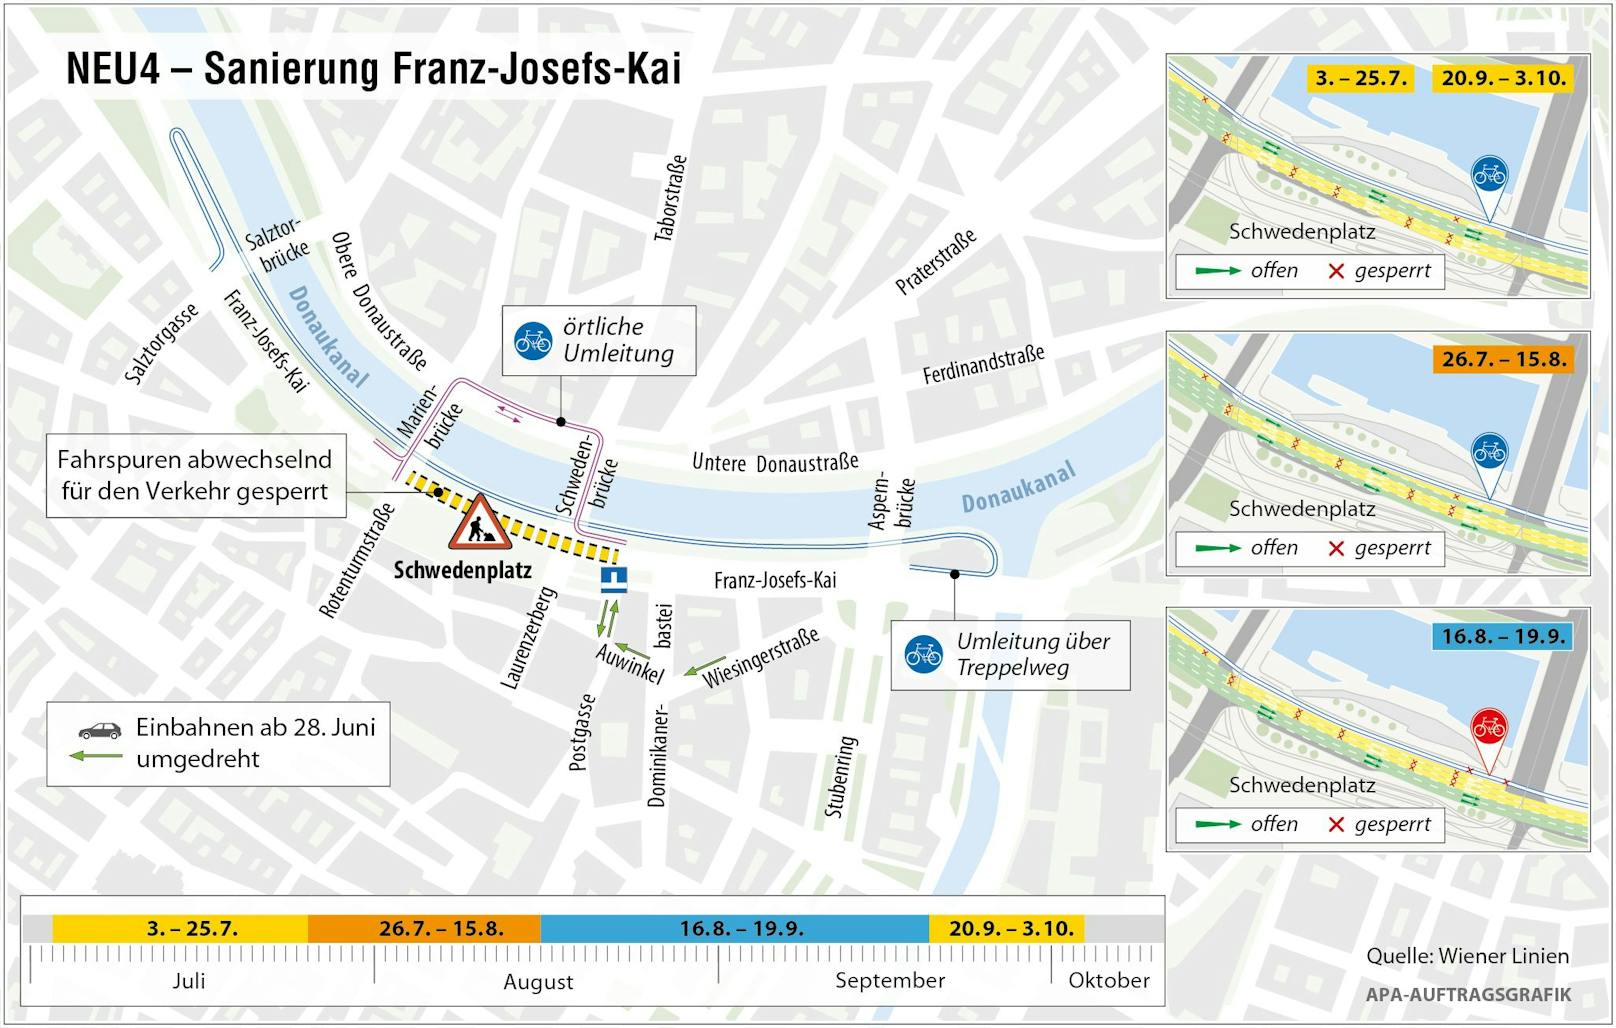 Für Sanierungsarbeiten an der U4 kommt es zu Umleitungen am Franz-Josefs-Kai.